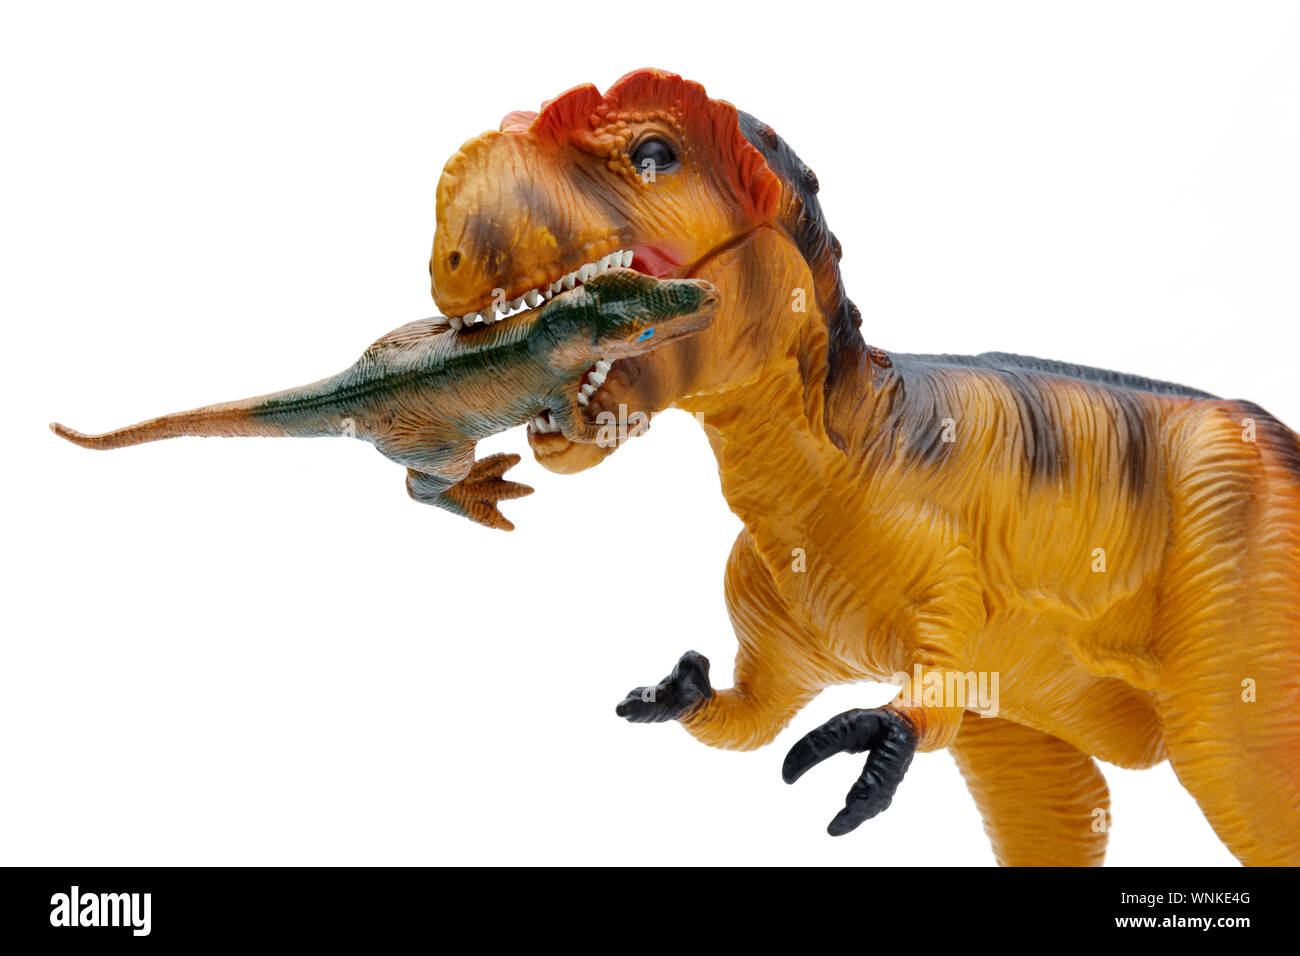 Vue rapprochée d'un jouet Tyrannosaurus rex, manger un petit dinosaure, isolé et tourné sur un fond blanc Banque D'Images